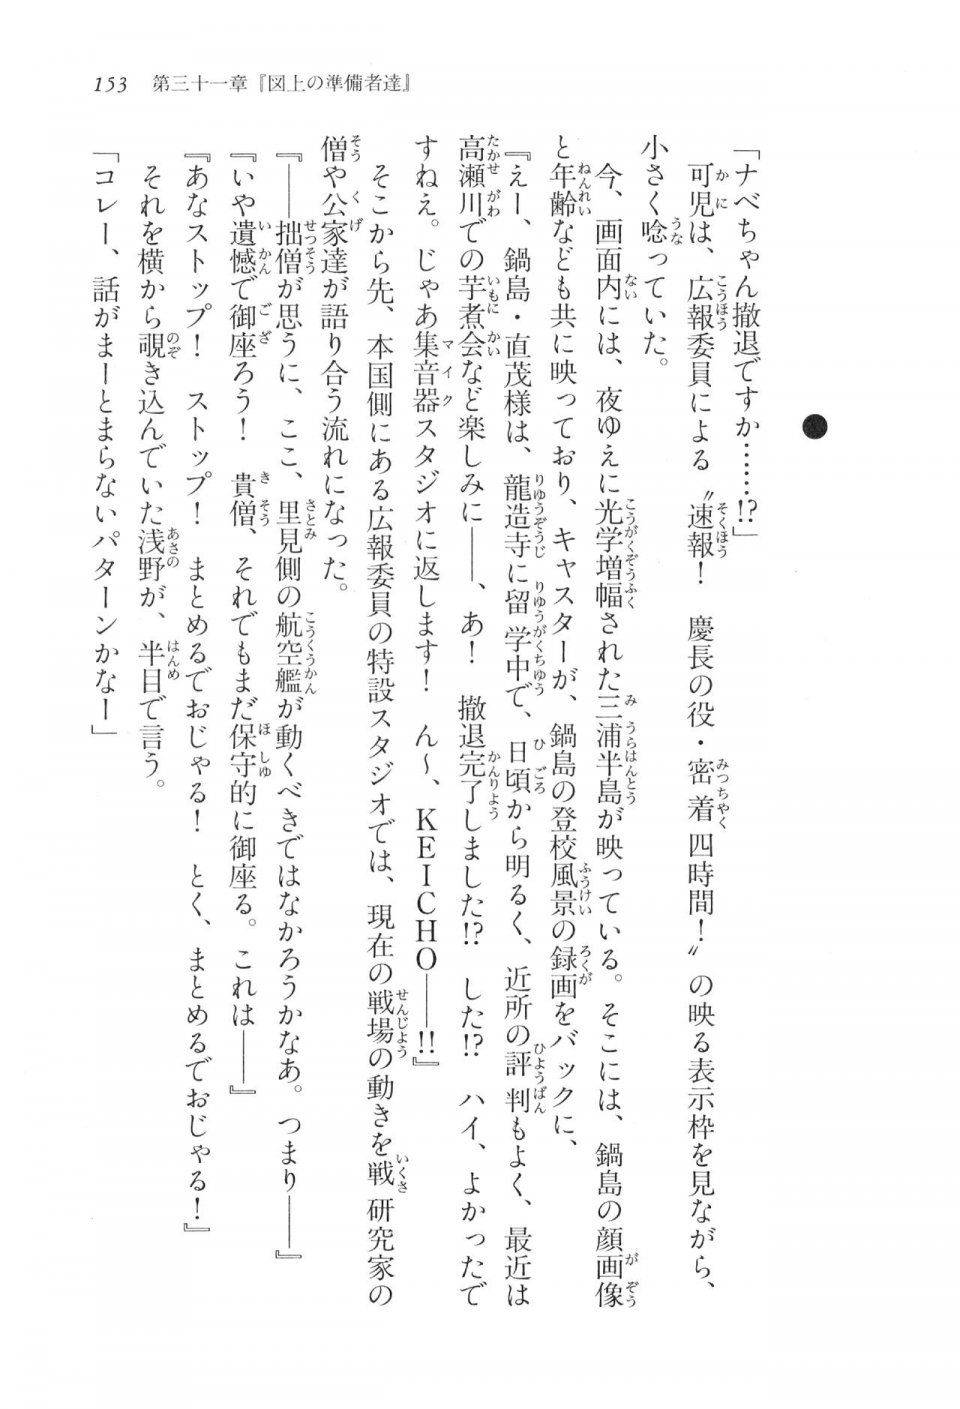 Kyoukai Senjou no Horizon LN Vol 17(7B) - Photo #153